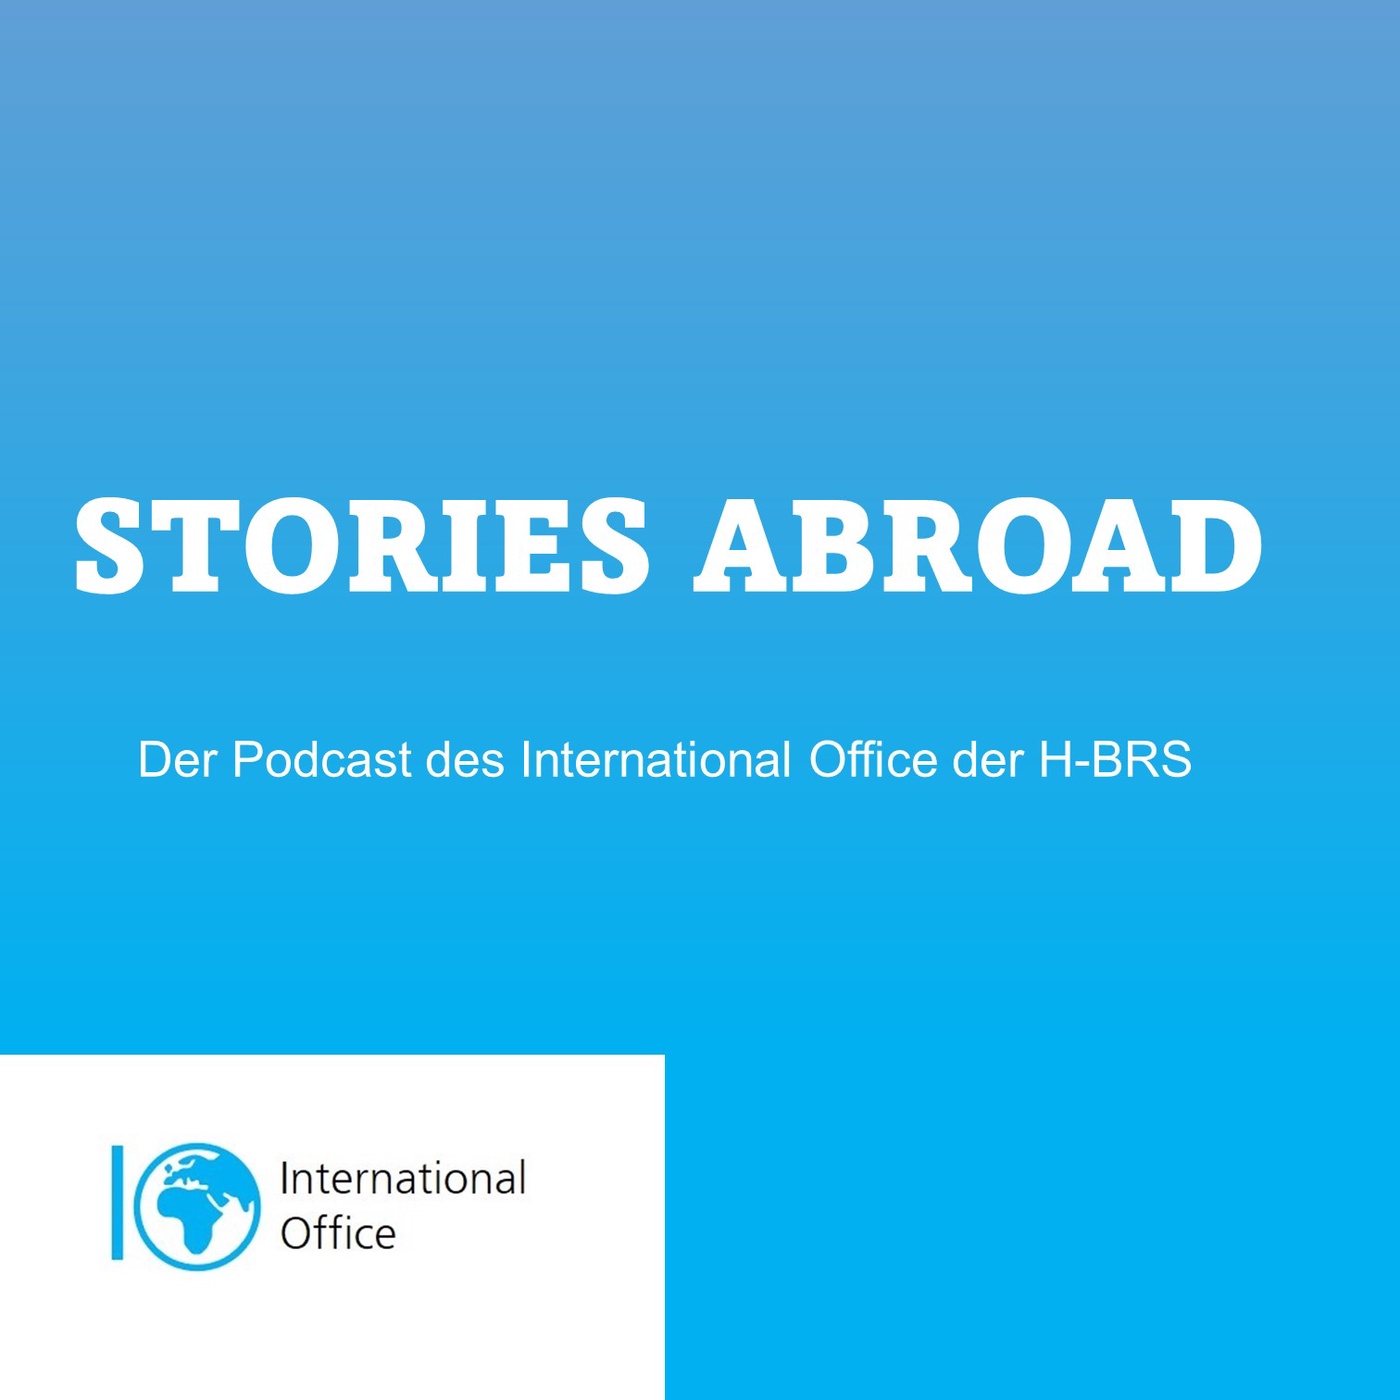 STORIES ABROAD - Der Podcast des International Office der H-BRS